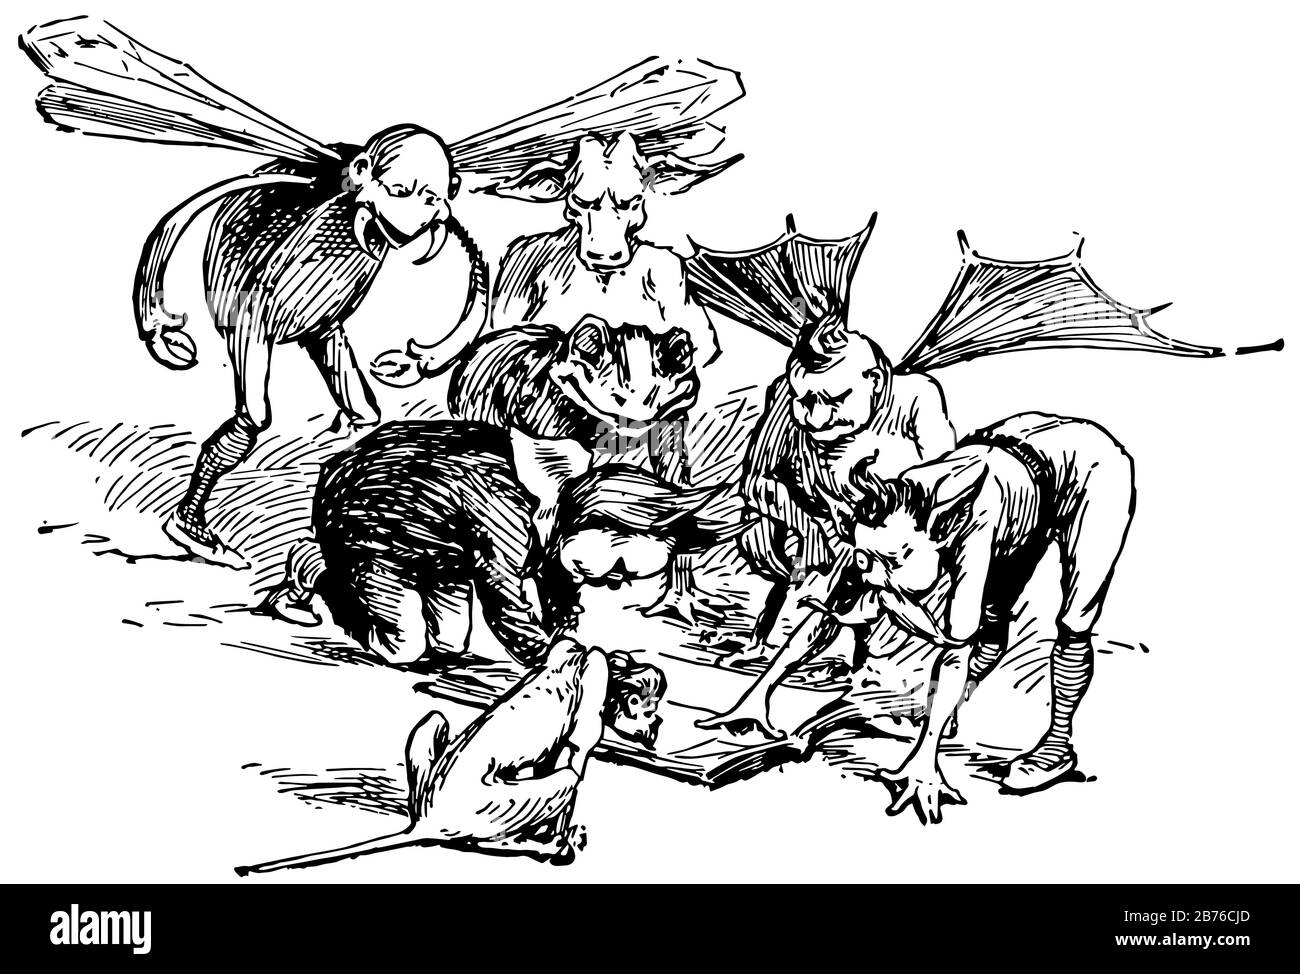 Moon Boys, diese Szene zeigt Jungen mit Flügeln und tierischen Körperteilen, die in Buch, Vintage-Line-Zeichnung oder Gravier-Illustration schauen Stock Vektor